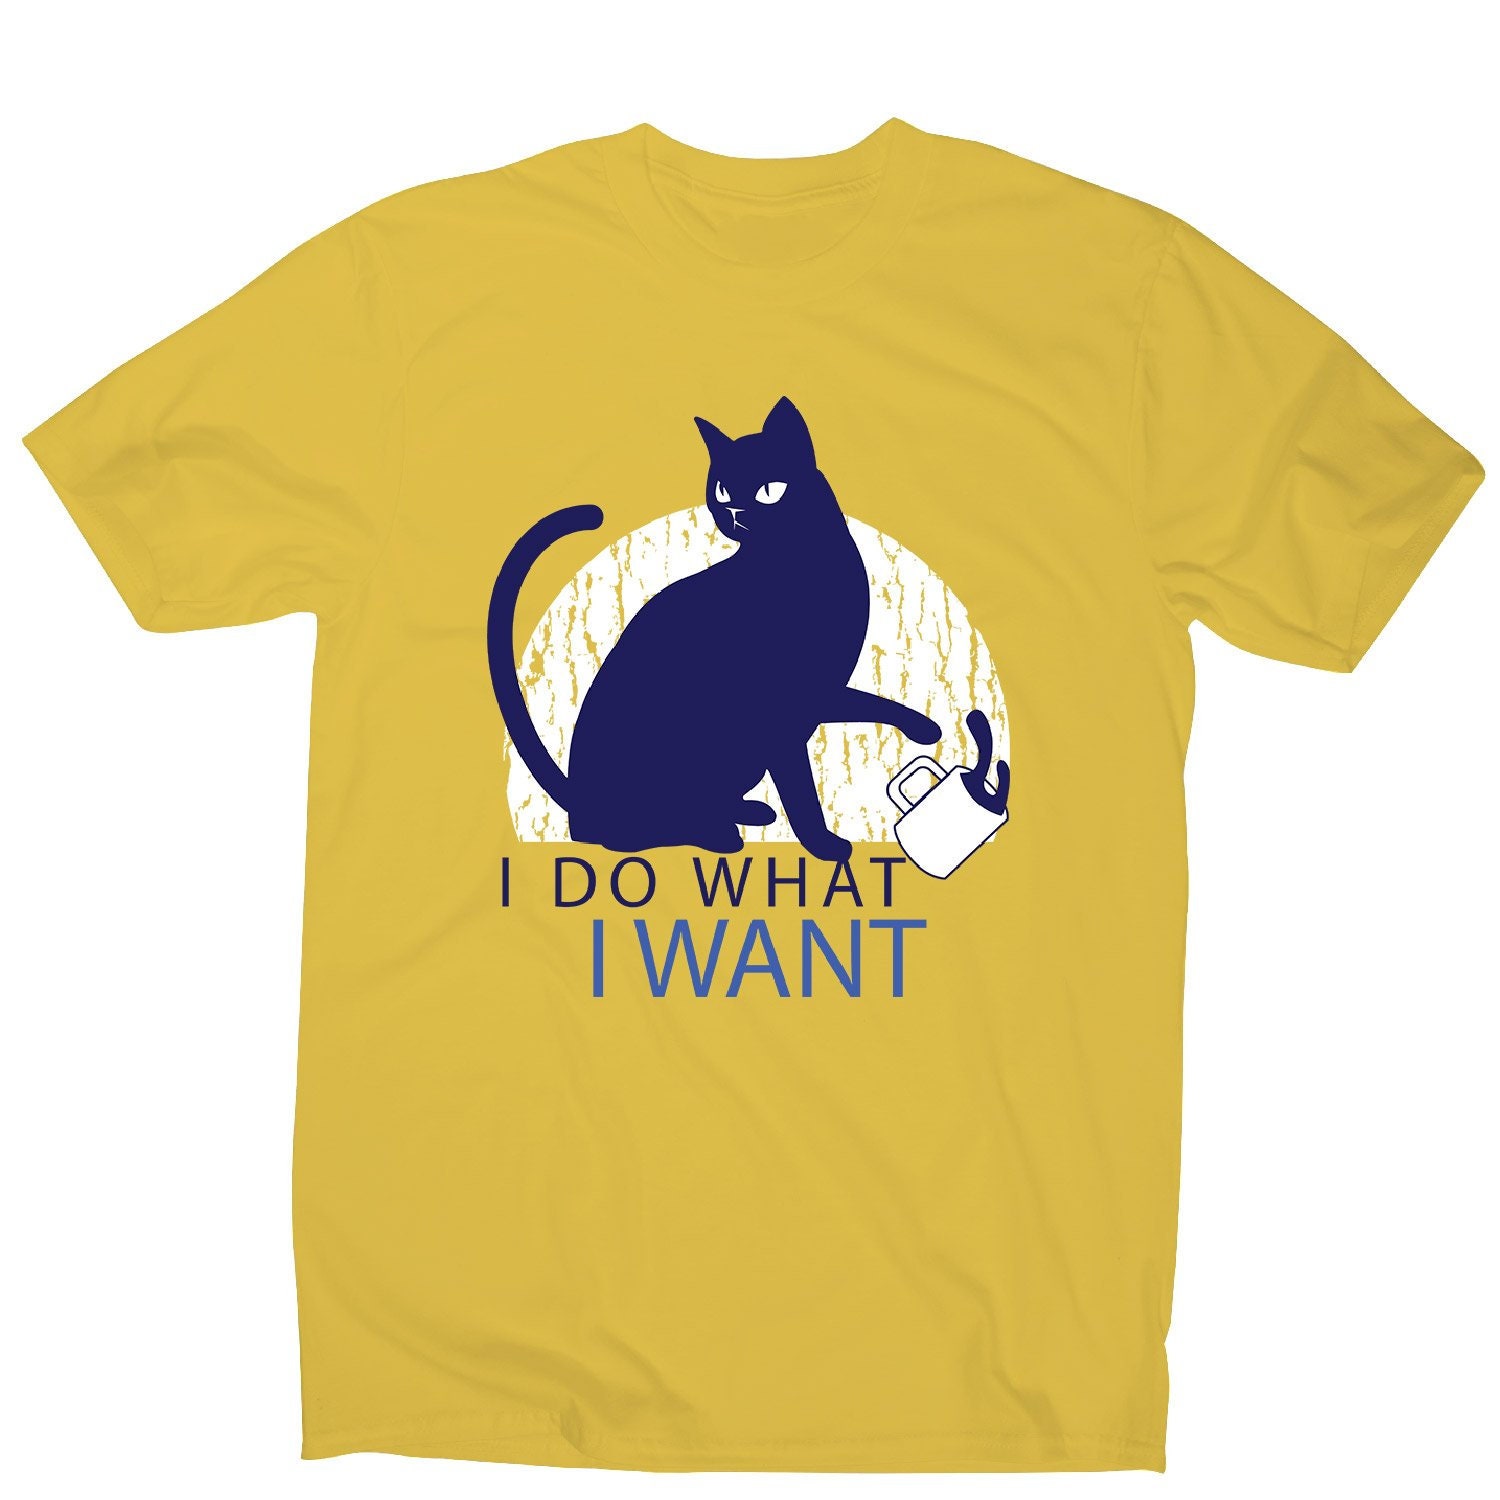 Rebel cat men's funny premium t-shirt | Etsy